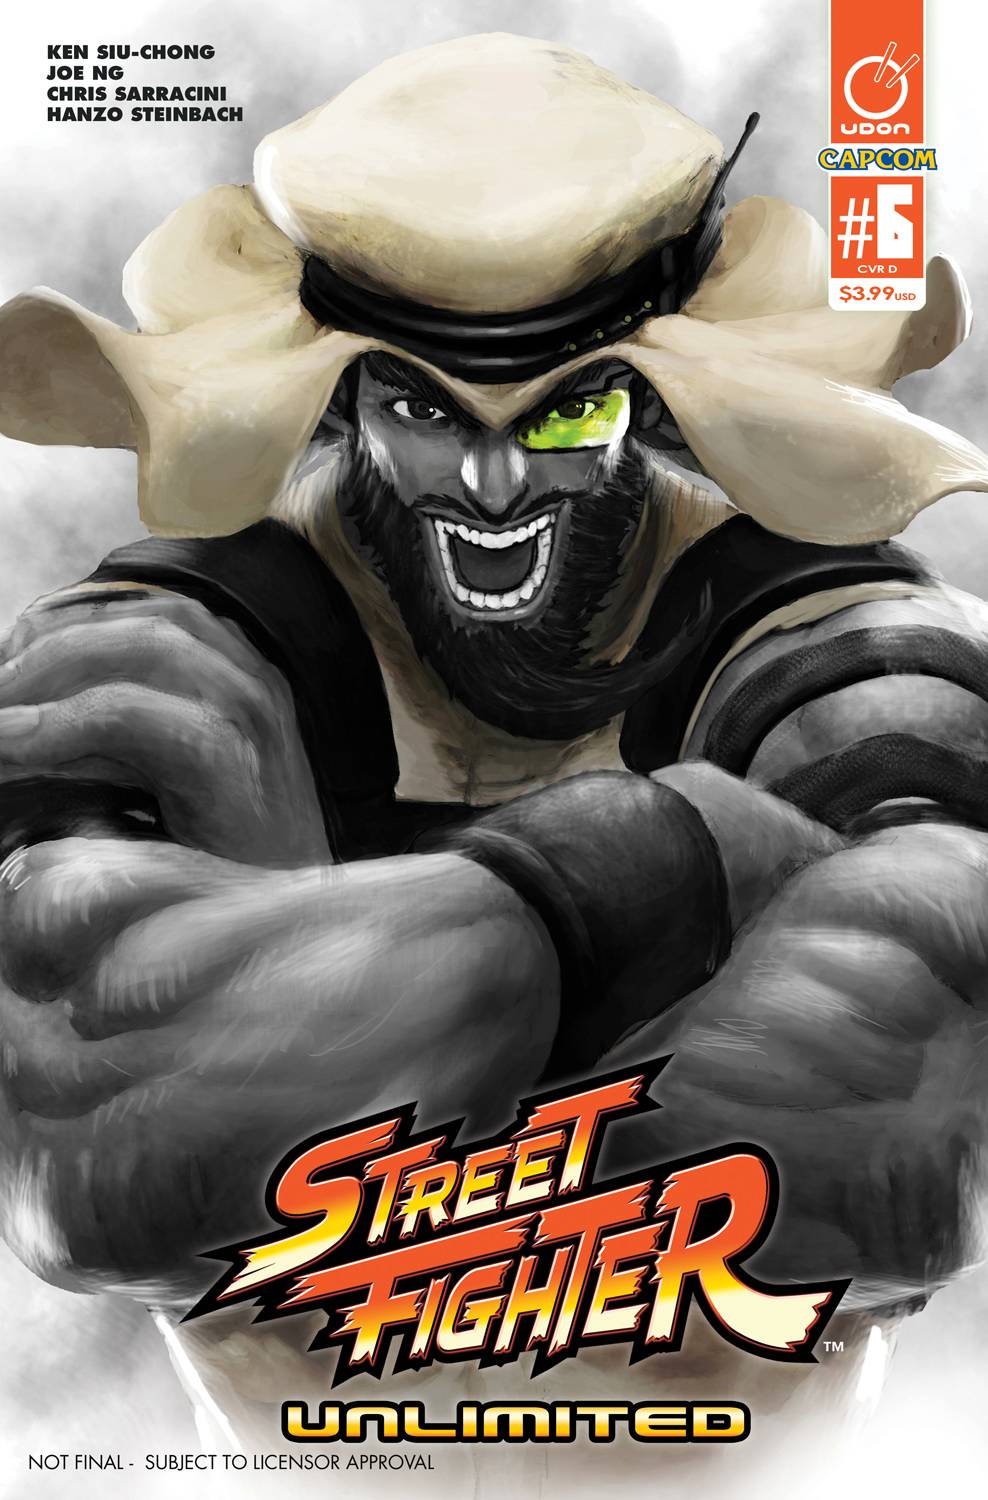  Super Street Fighter #6 eBook : Siu-Chong, Ken, Zub